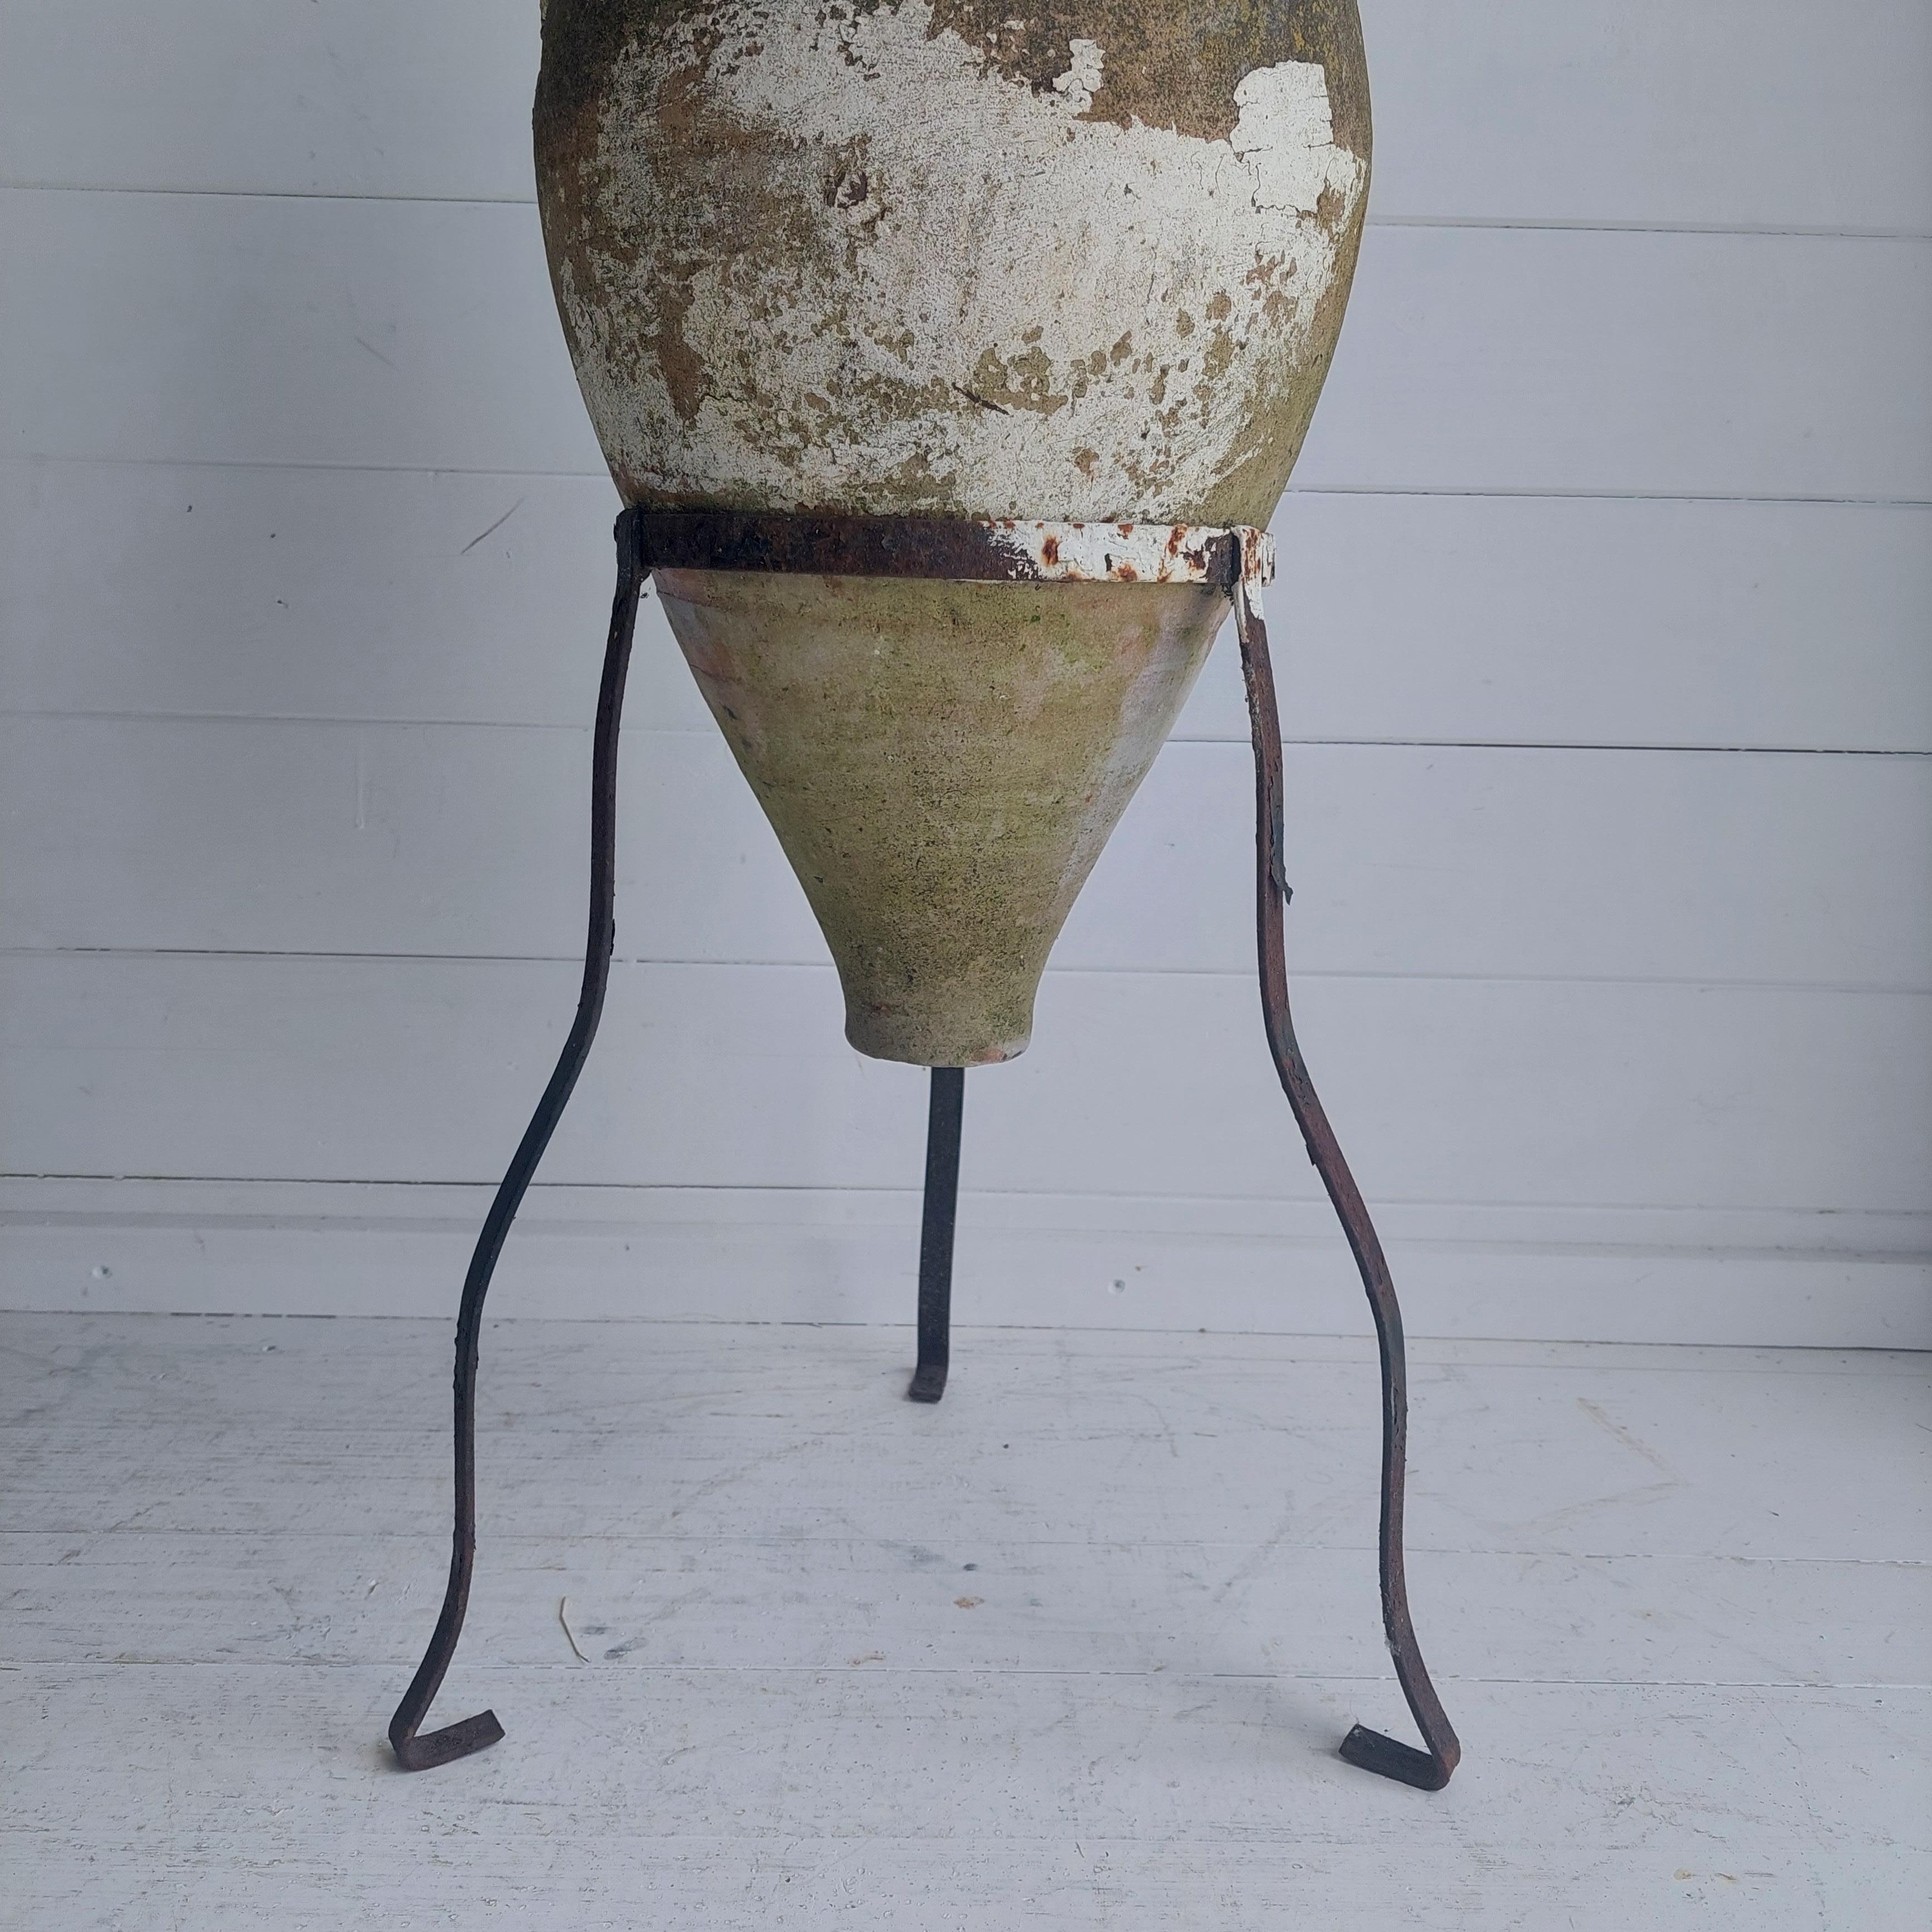 Européen Vintage Antique Terracotta Amphora with Wrought Iron Tripod Stand, 1800s en vente